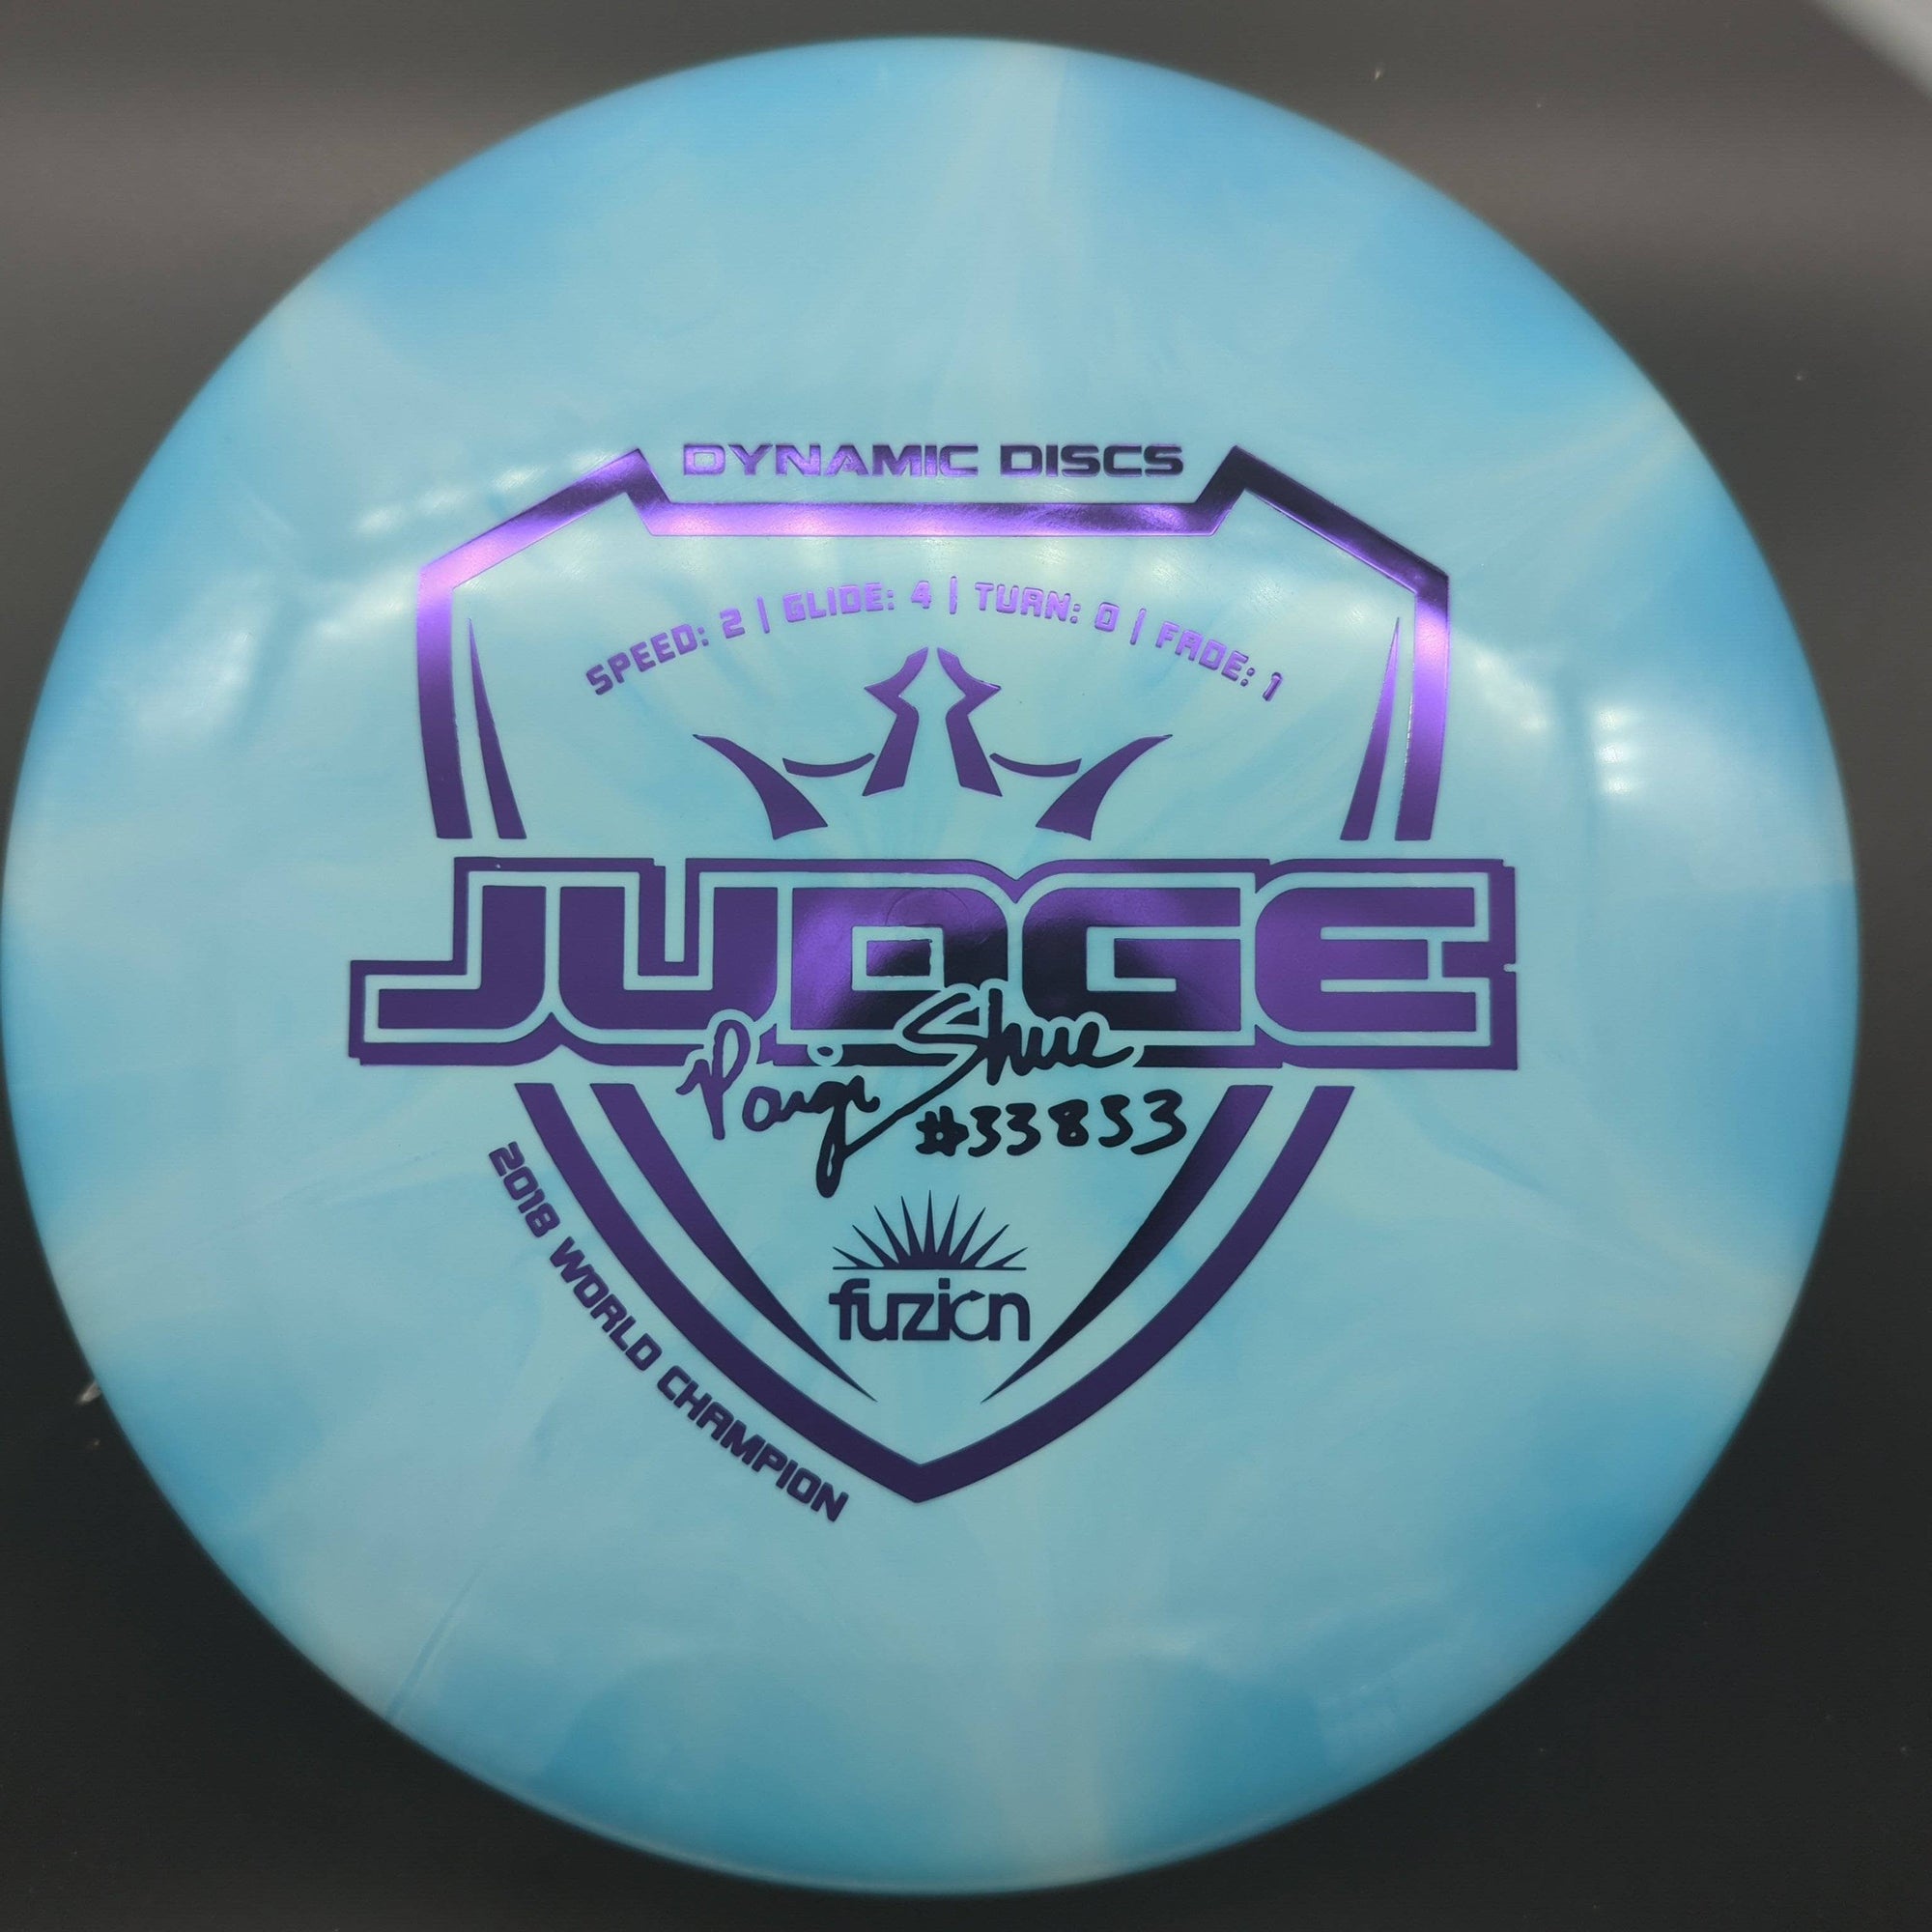 Dynamic Discs Putter Blue Purple Stamp 175g Fuzion Burst Judge Paige Shue